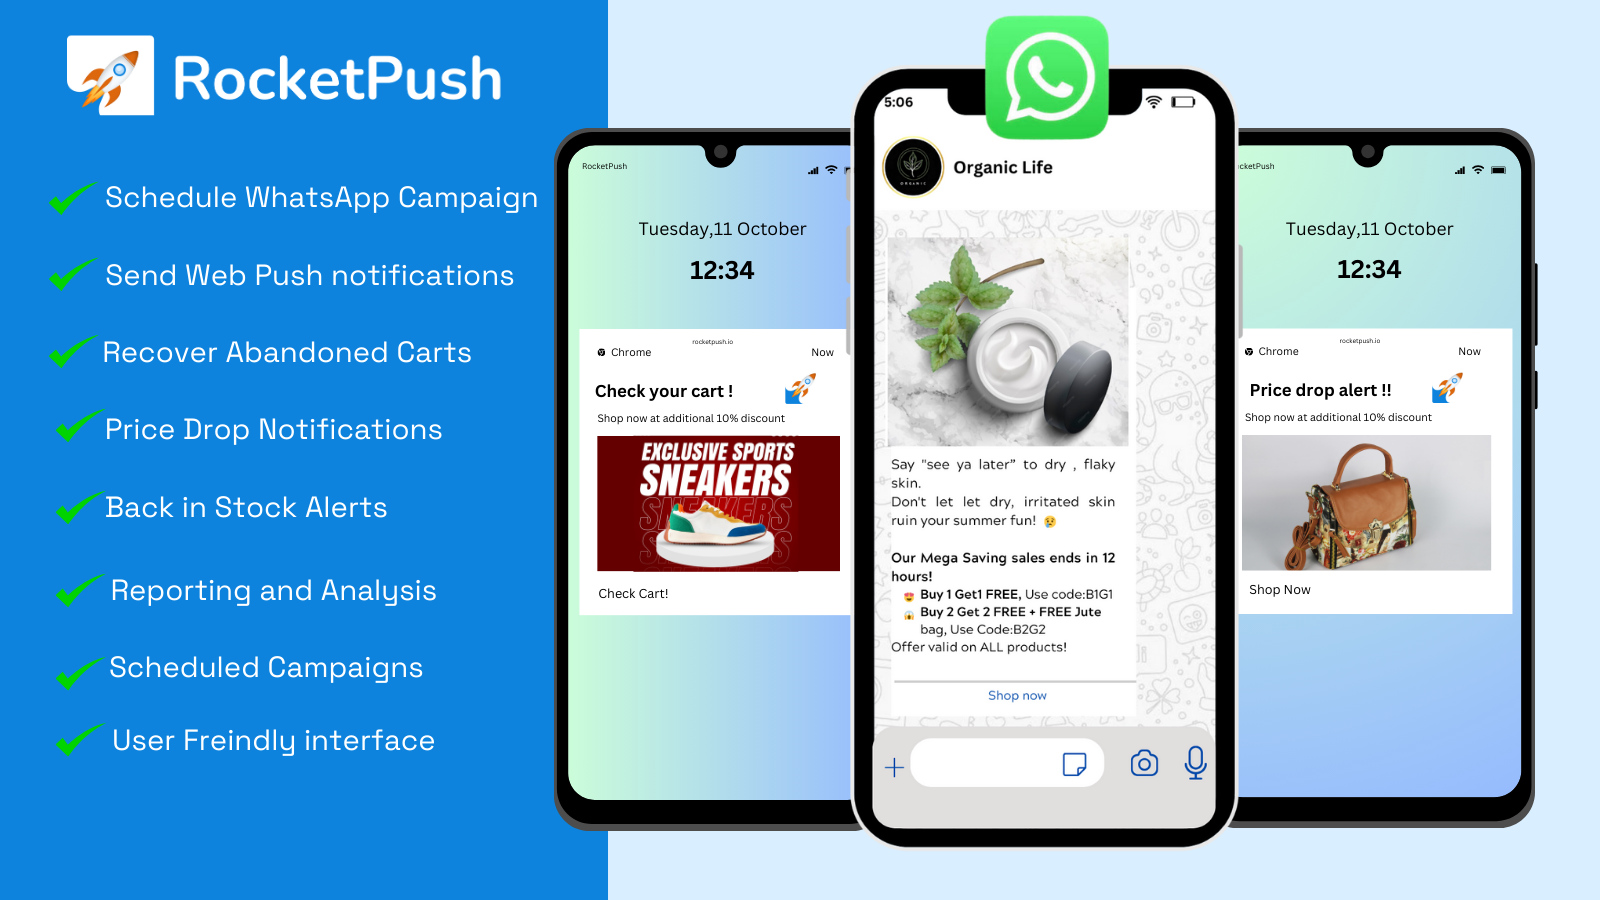 RocketPush: WhatsApp&WebPush